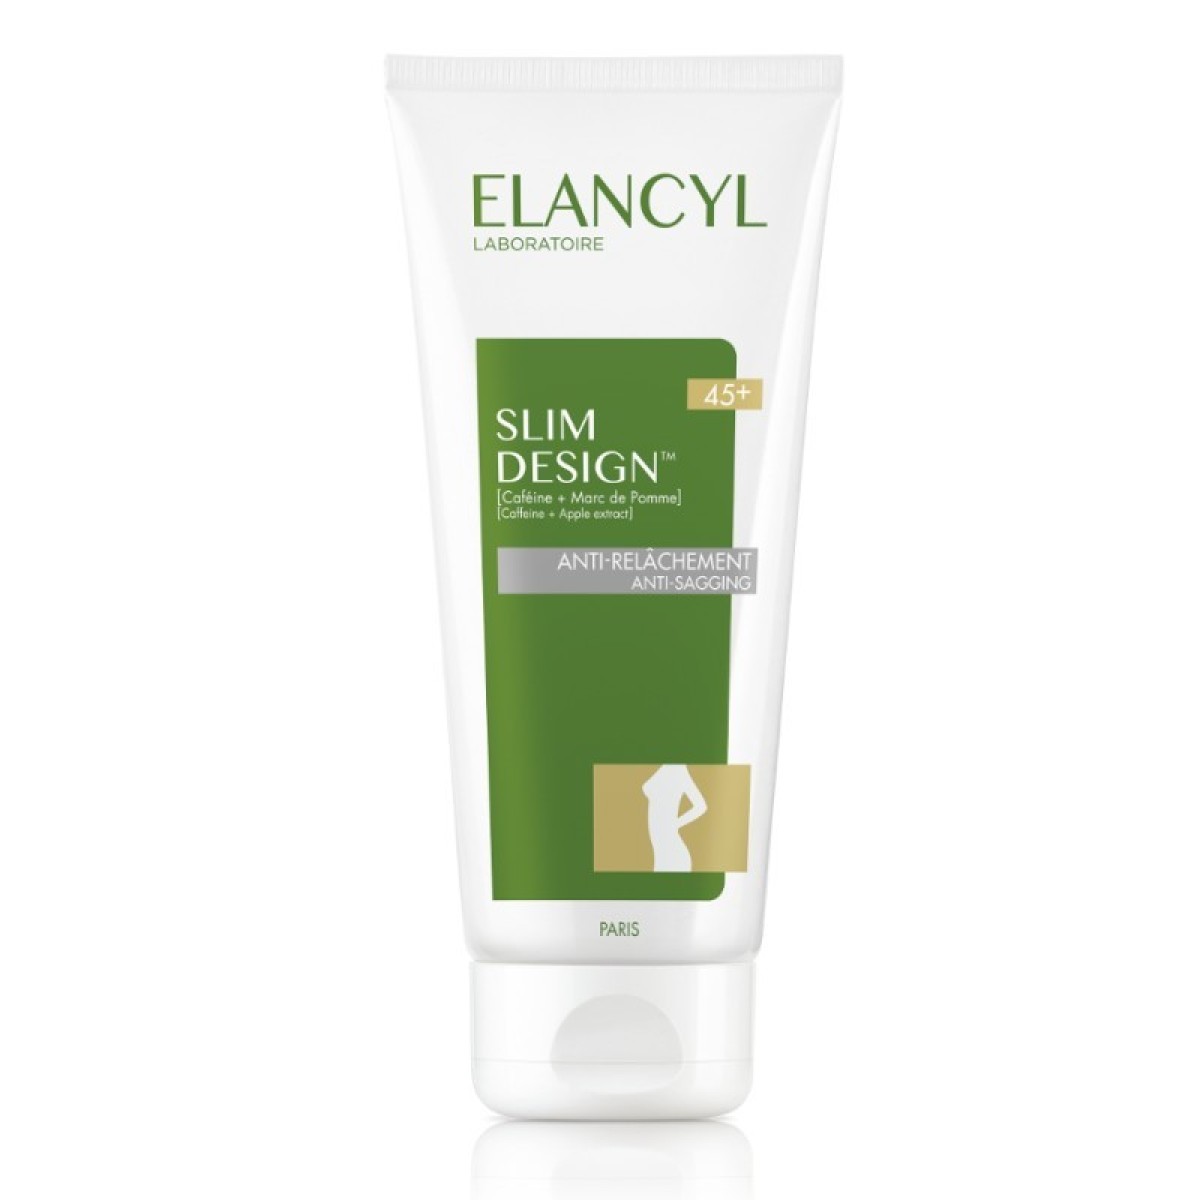 Elancyl | Promo Slim Design Anti-Sagging 45+ | Κρέμα Σώματος κατά της Χαλάρωσης | 200ml